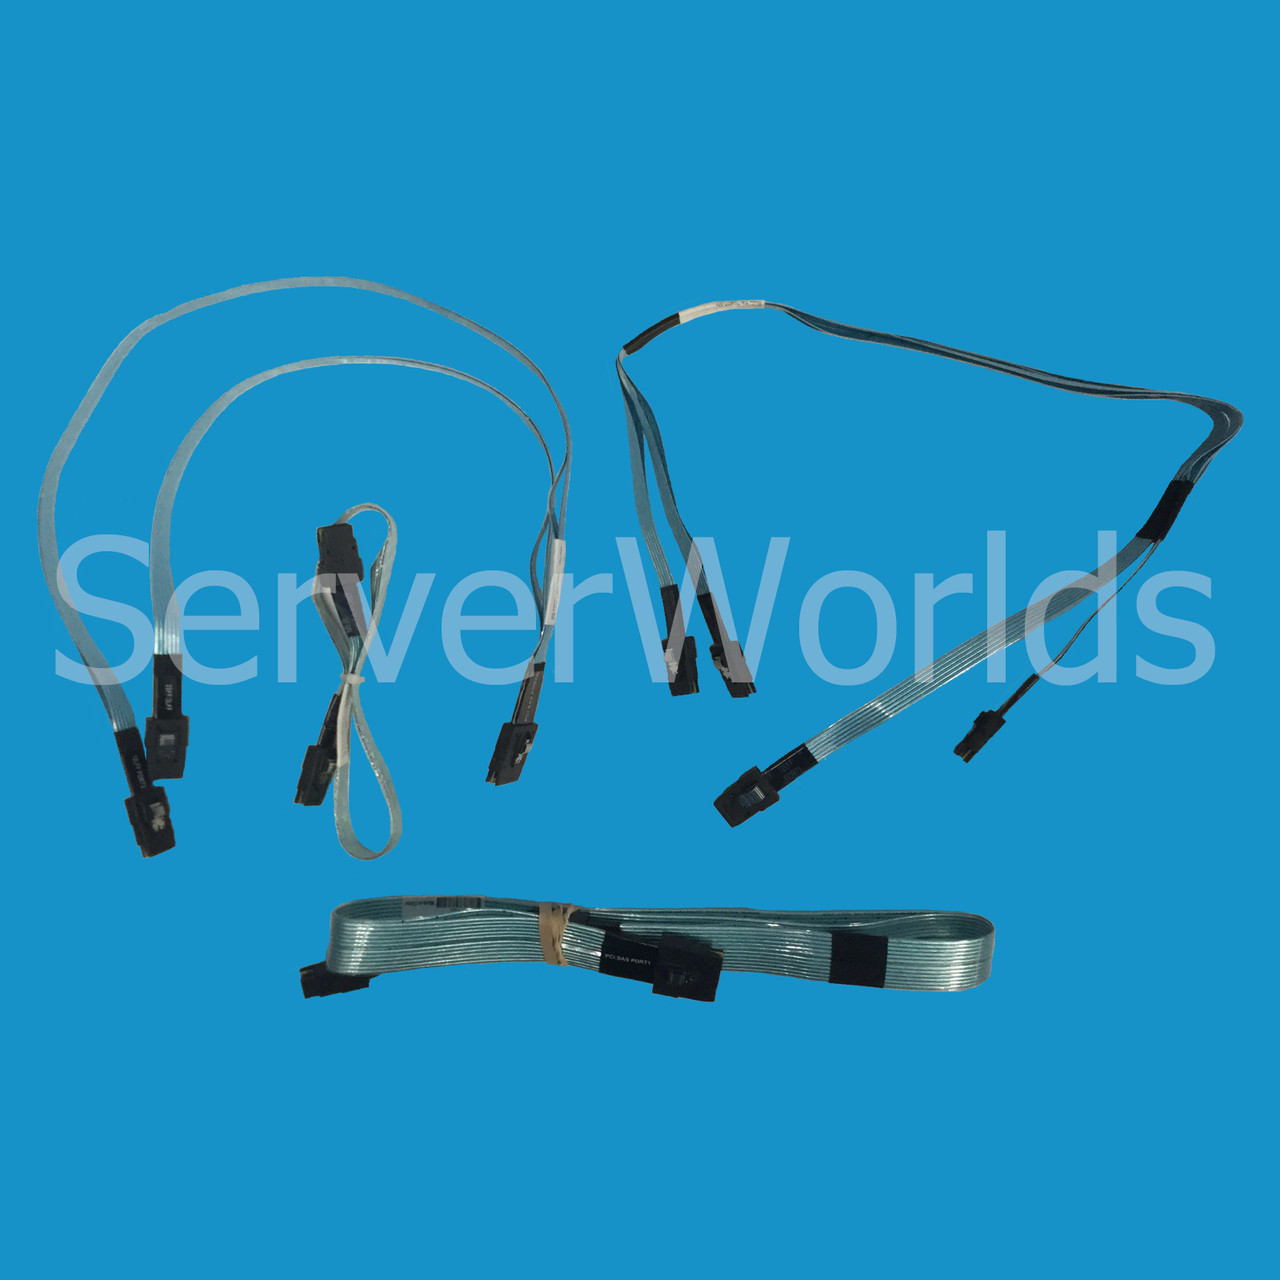 HP 784627-001 DL380 Gen9 SAS Cable Kit 